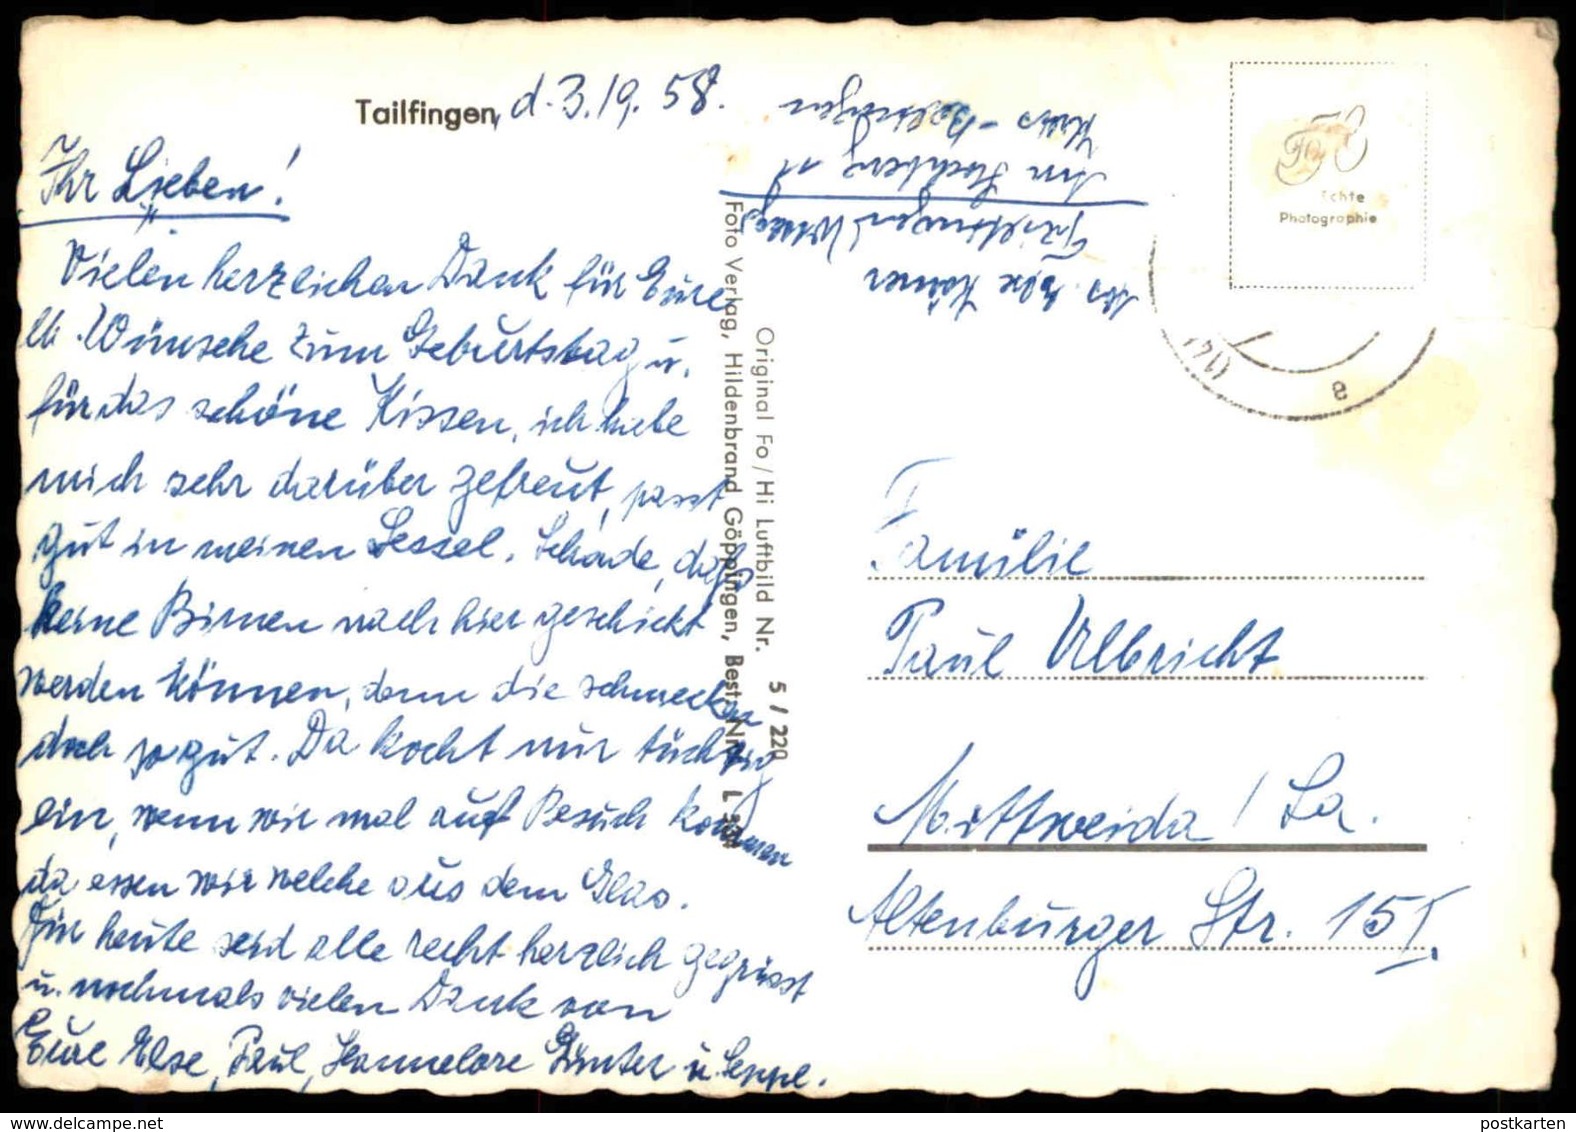 ÄLTERE POSTKARTE TAILFINGEN FLIEGERAUFNAHME LUFTBILD 1958 ALBSTADT Ansichtskarte AK Postcard Cpa - Albstadt